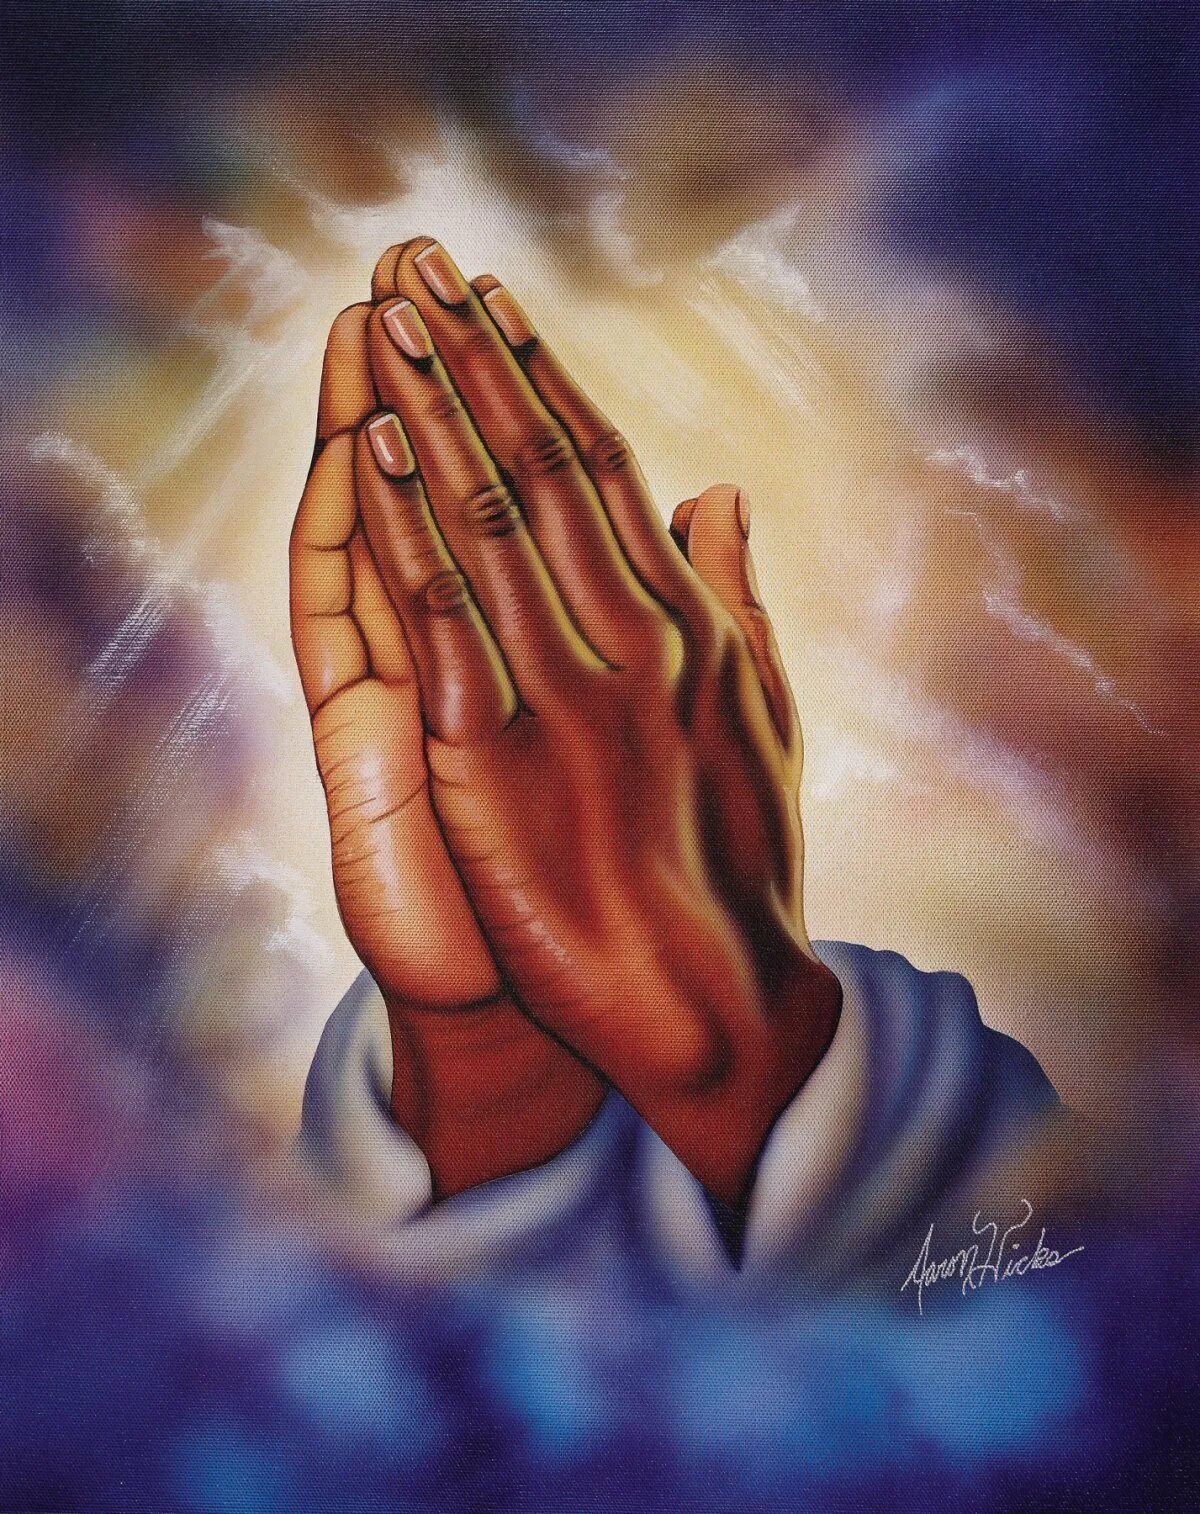 Сложенные ладони. Руки в молитве. Человек молится. Ладони в молитве.